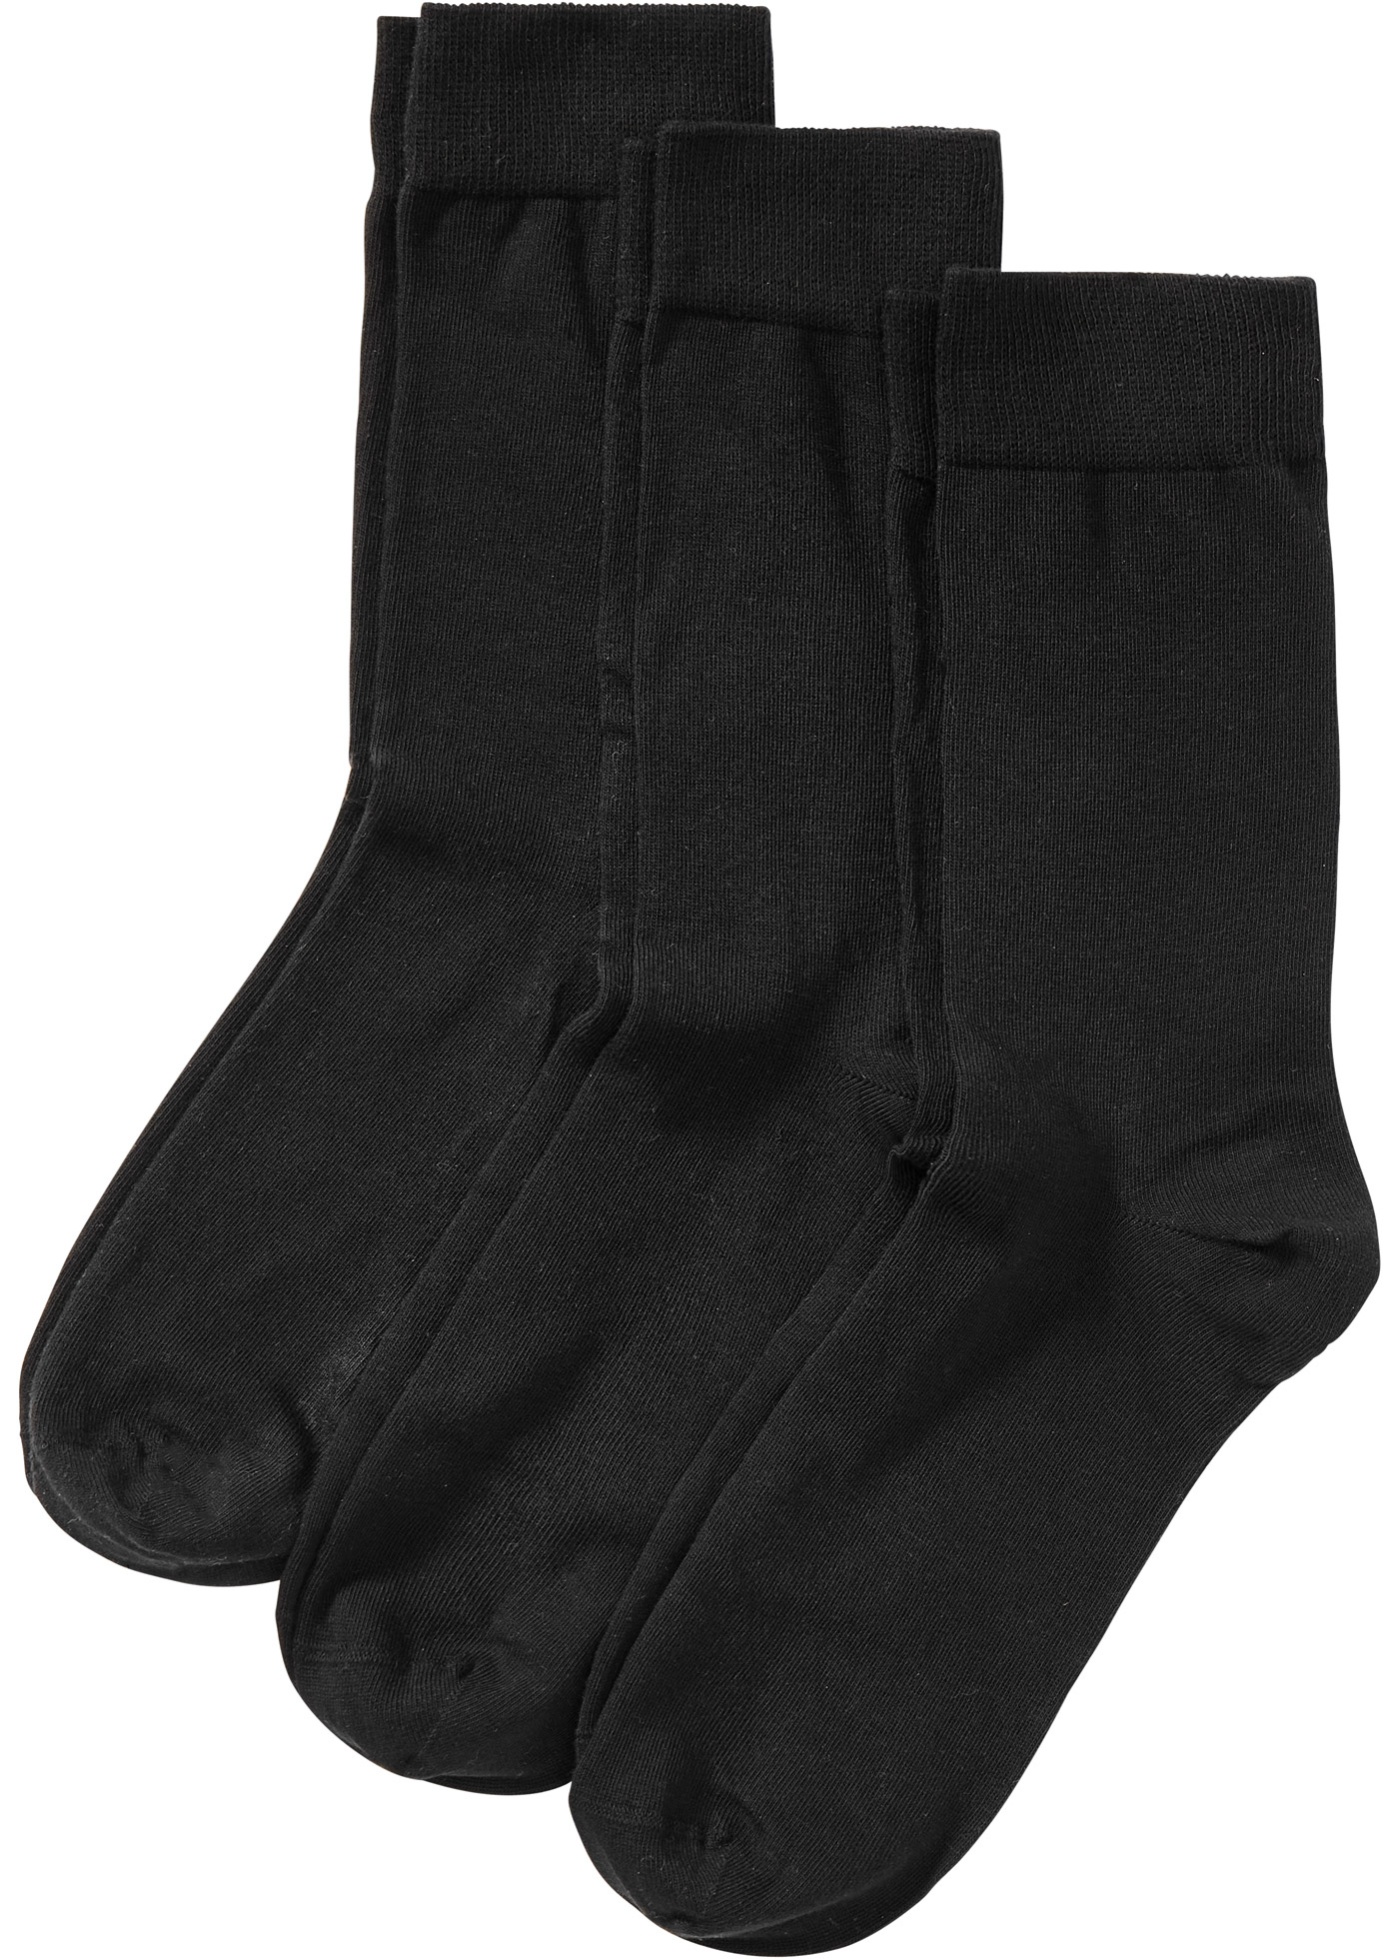 Ponožky, vysokohodnotné (3 ks v balení), s exkluzívnym pocitom na nosenie s bio bavlnou